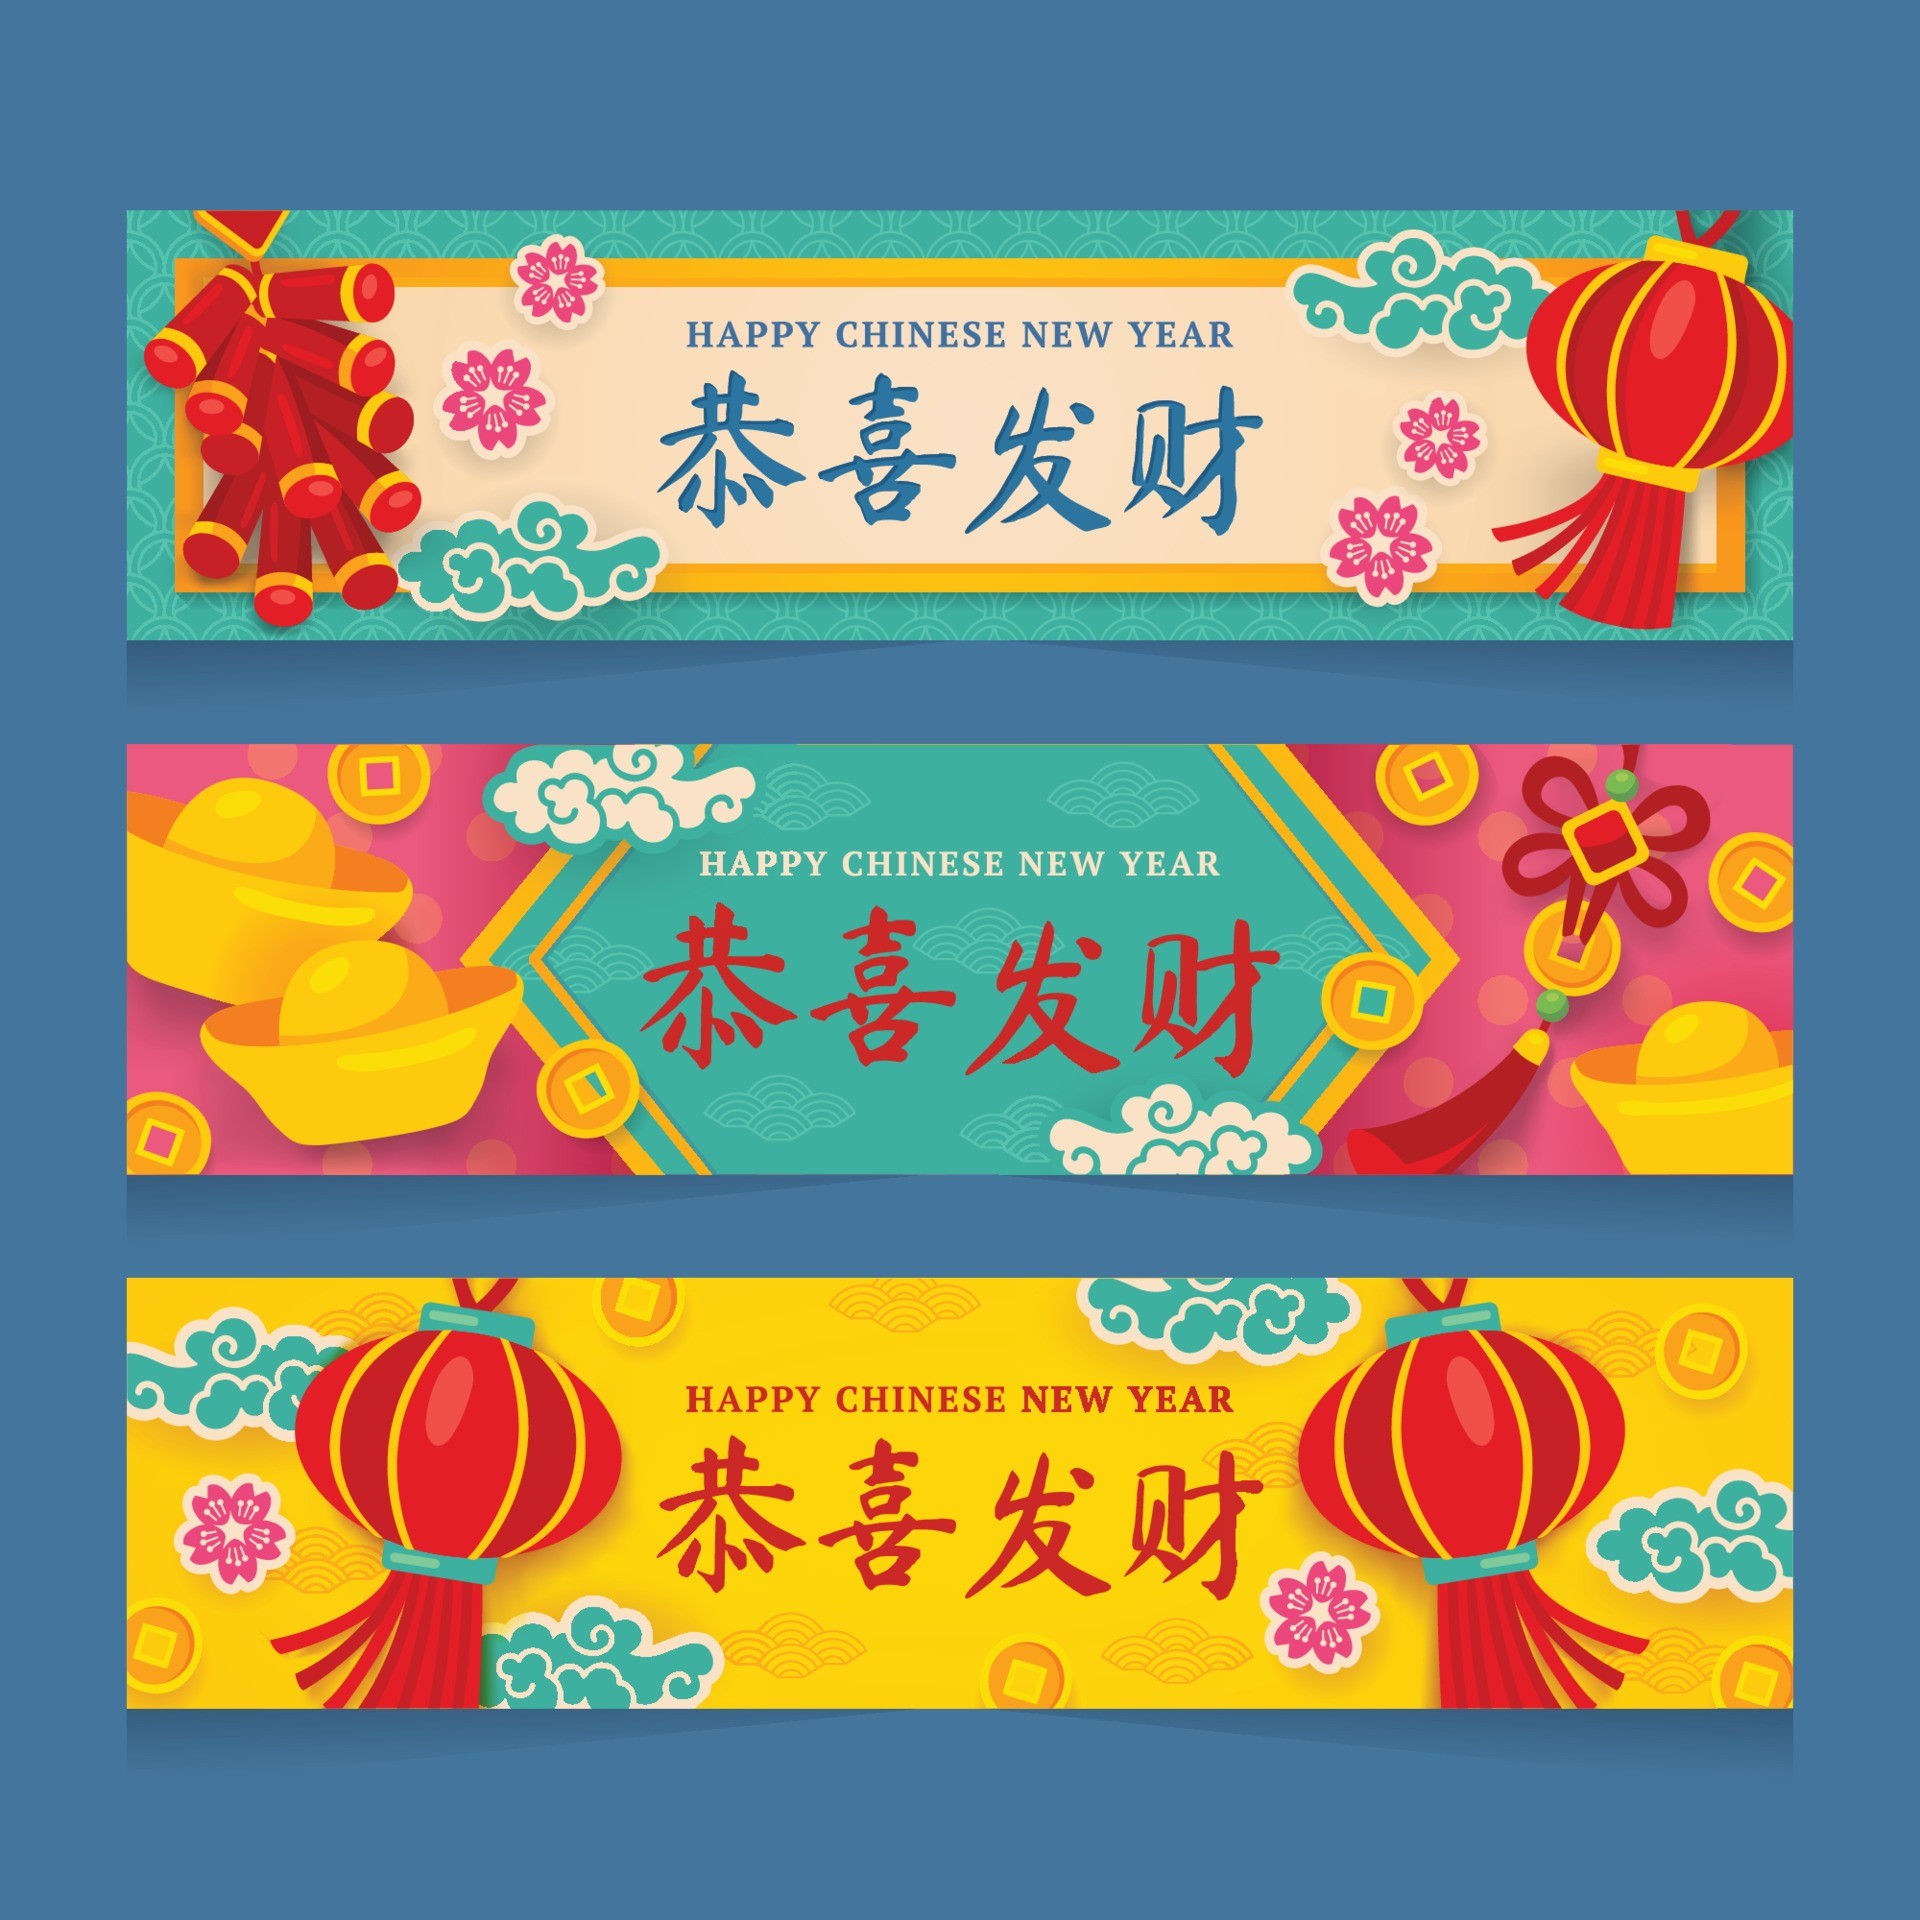 中国新年快乐彩色横幅模板0